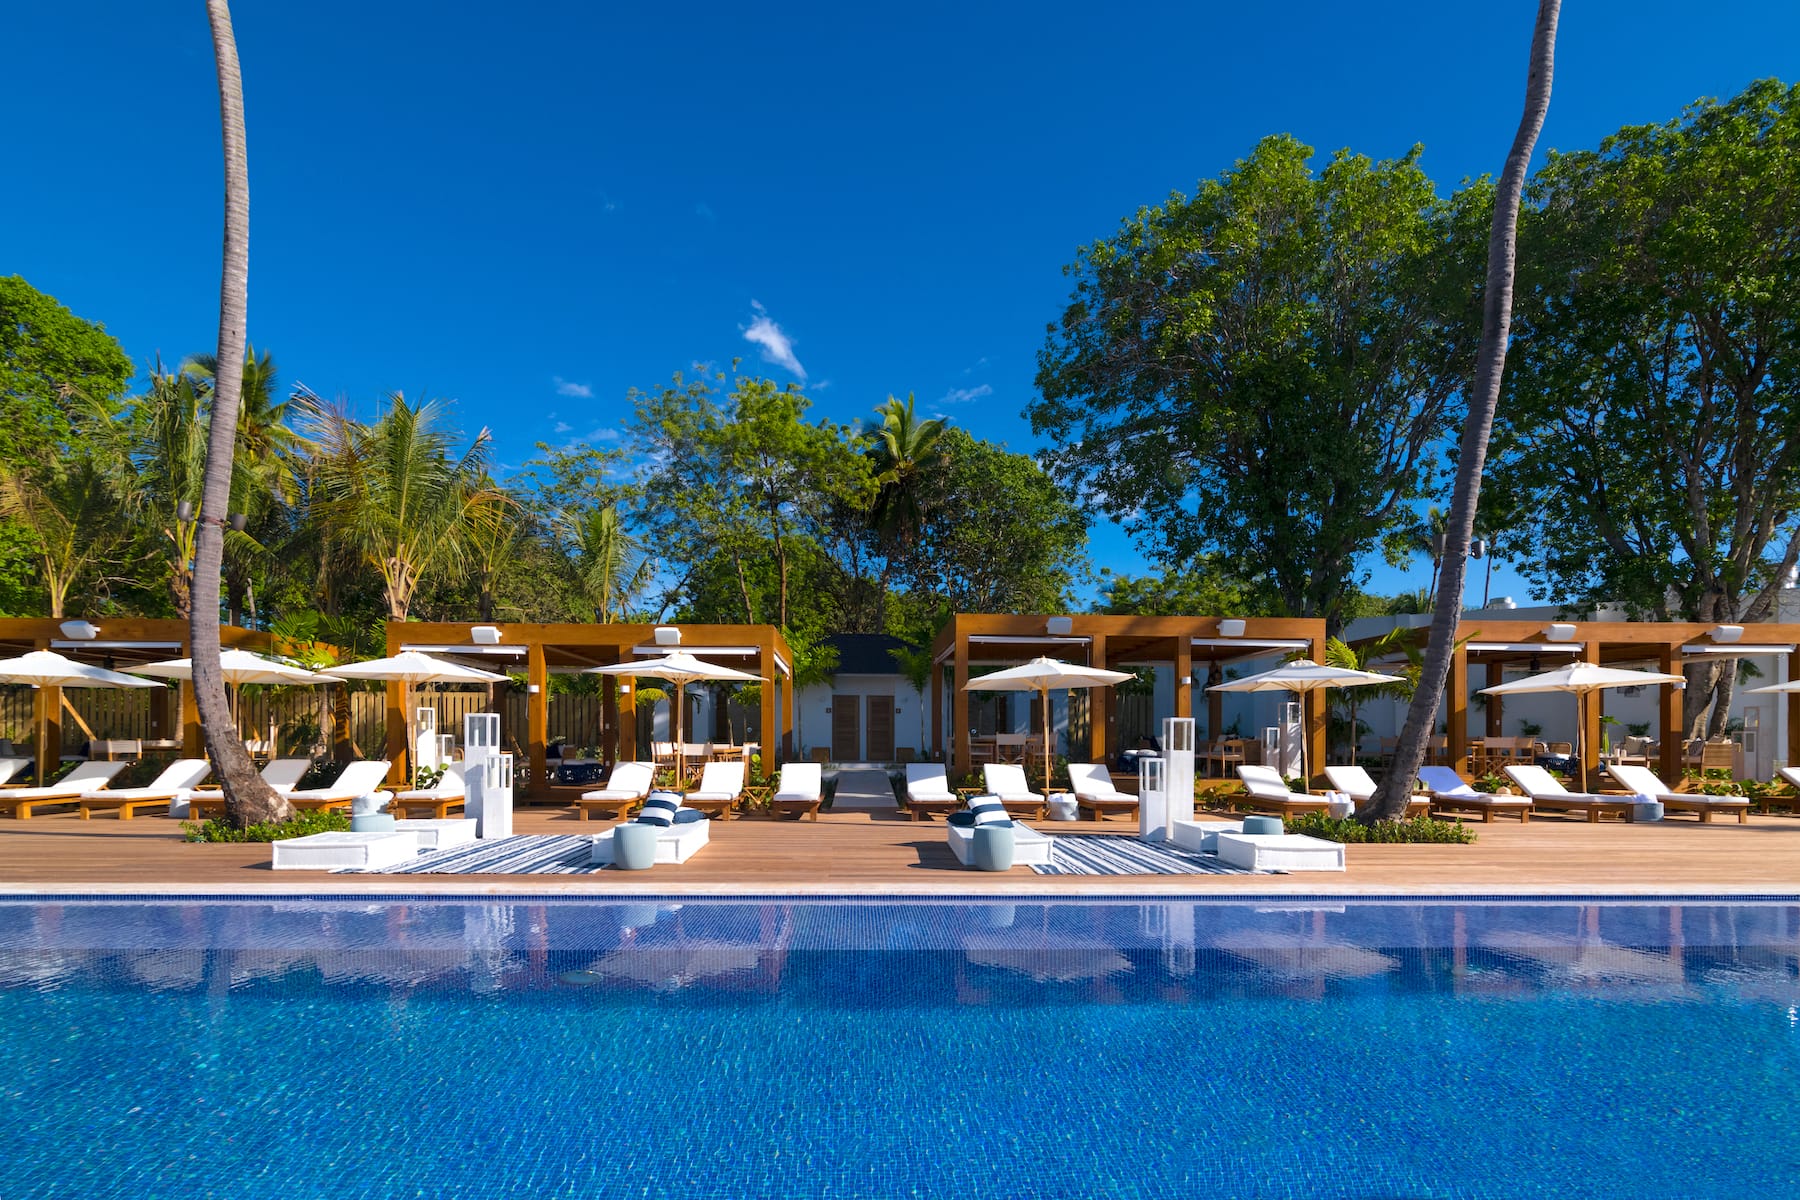 Minitas Pool at Casa de Campo Resort & Villas in the Caribbean.